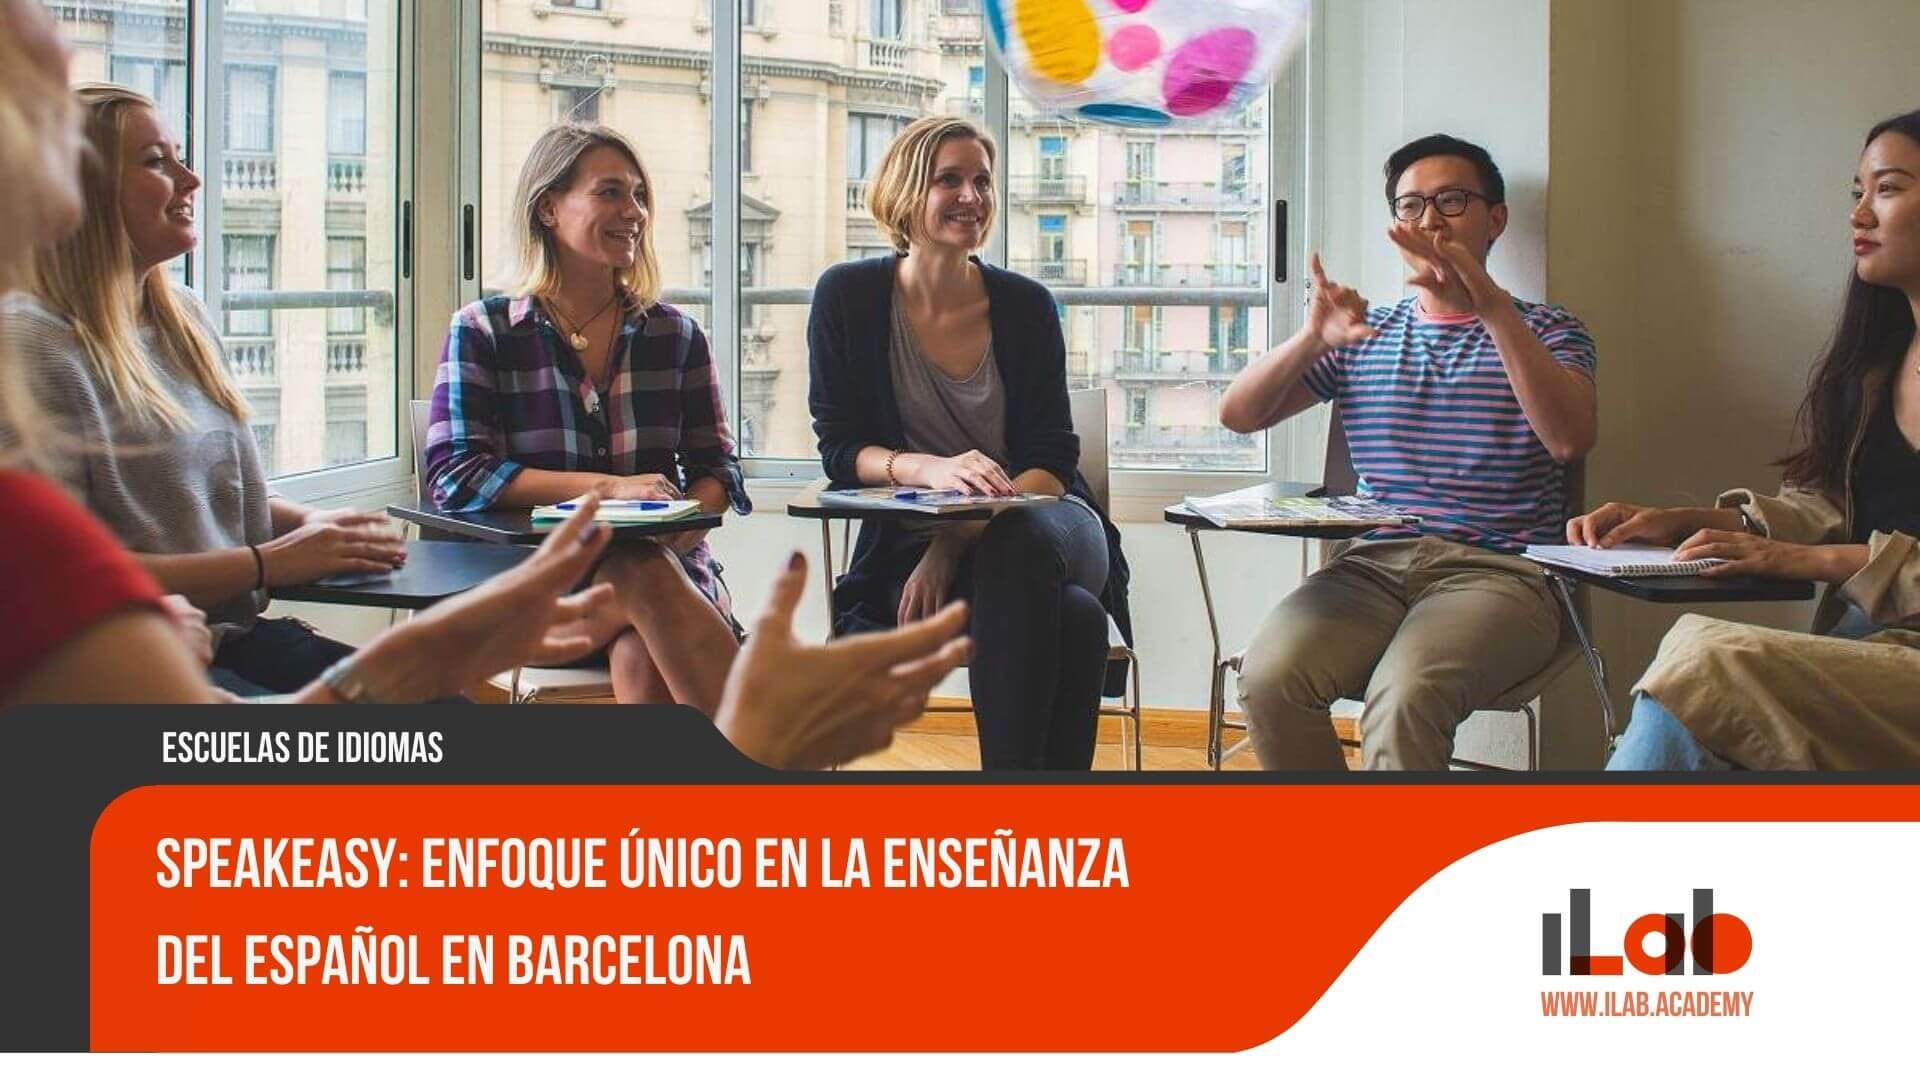 Speakeasy: Enfoque único en la enseñanza del español en Barcelona